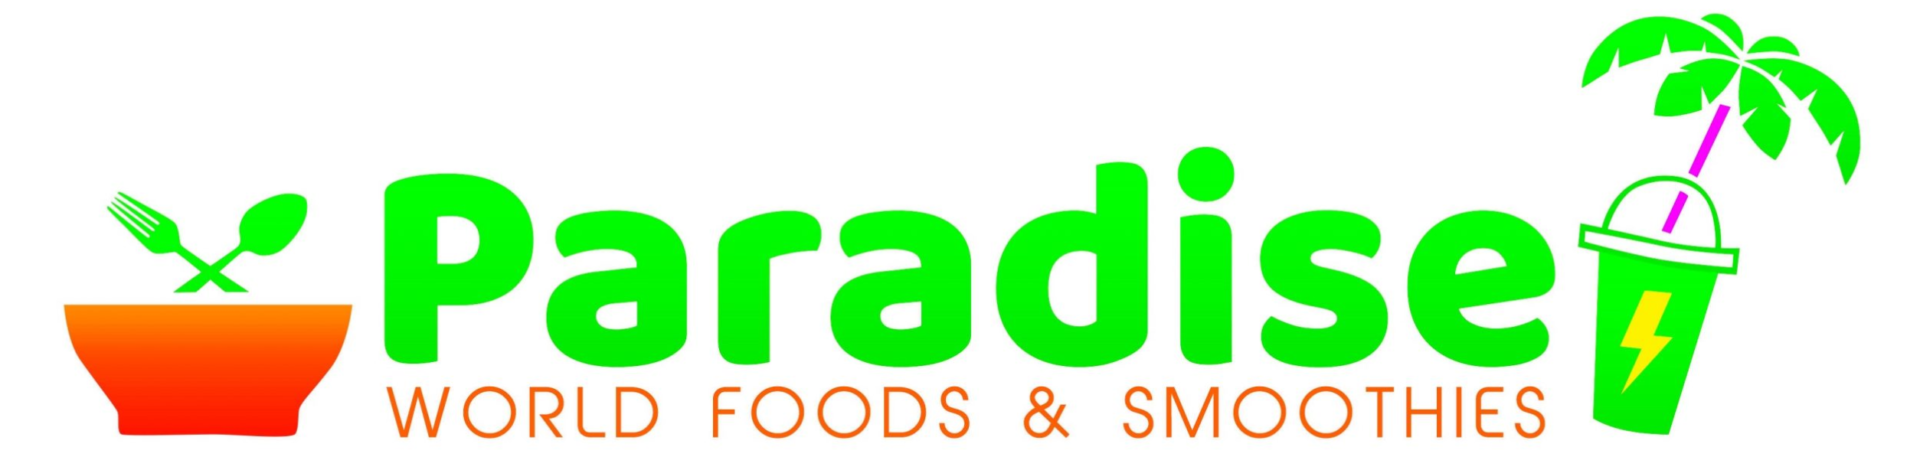 Paradise World Foods & Smoothies